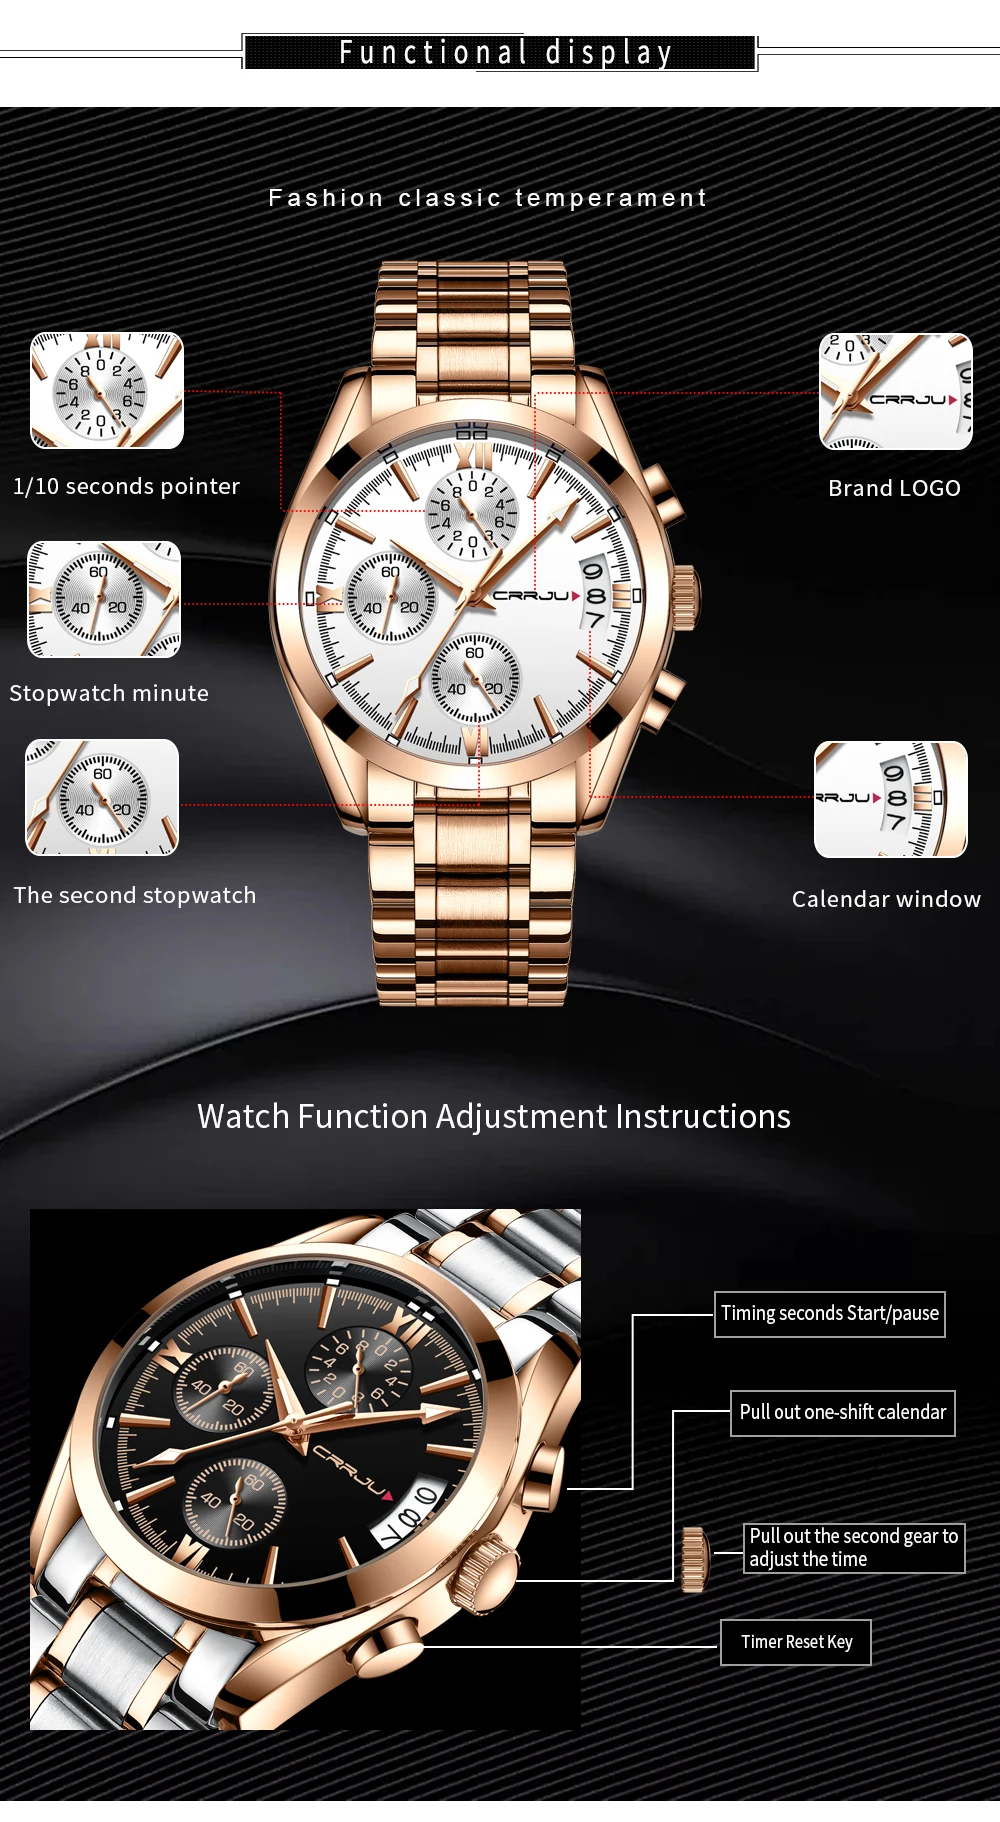 Crrju новый для мужчин s часы Элитный бренд Спорт Кварцевые часы для мужчин сталь повседневное бизнес